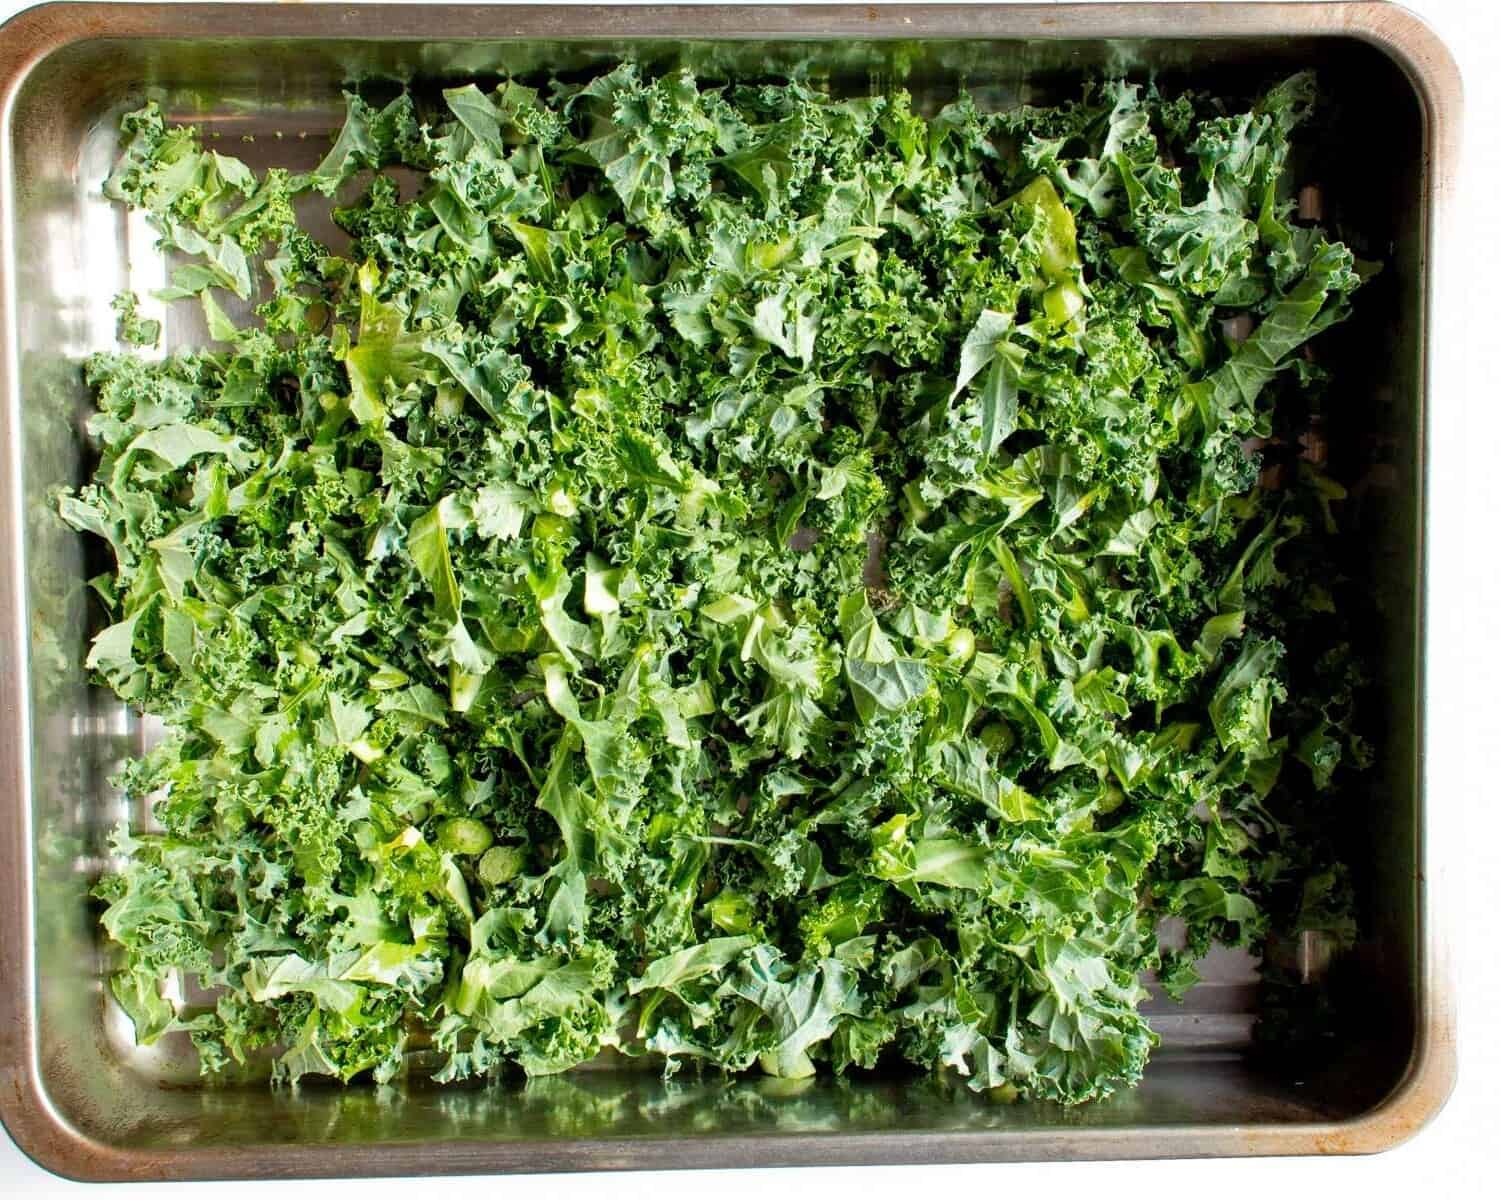 Chopped kale on baking tray